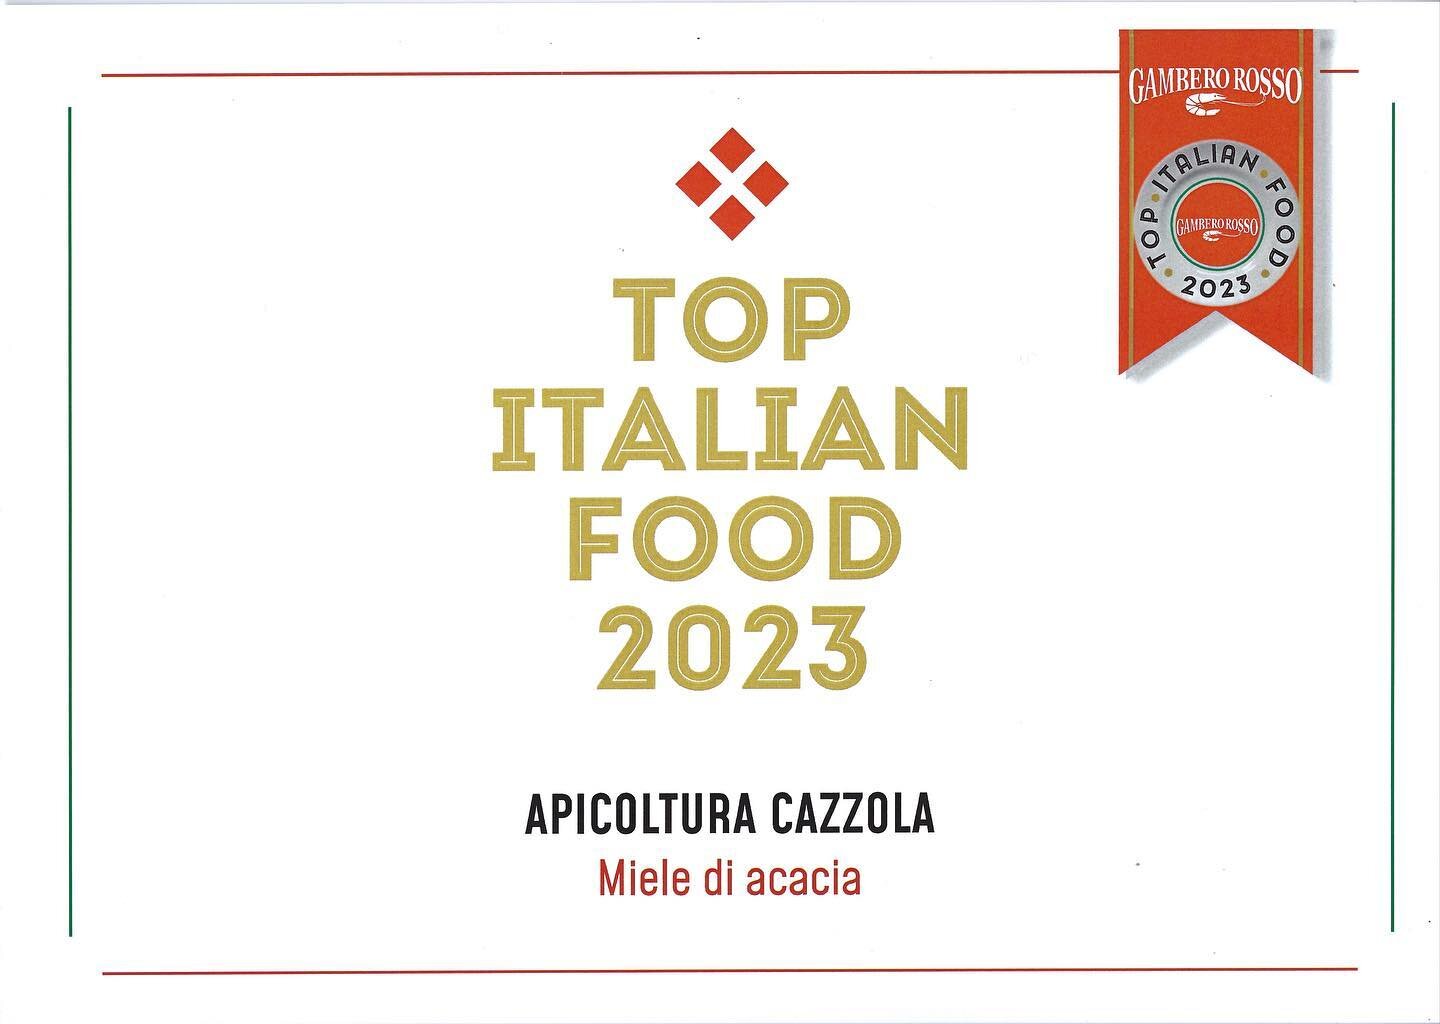 Siamo onorati di far parte della guida Top Italian Food&amp;Wine 2023 del Gambero Rosso con il nostro miele di Acacia. 
Scopri di pi&ugrave;: https://www.apicolturacazzola.com/gamberorosso 

@gambero_rosso 
#topitalianfood2023 #apicolturacazzola #gam